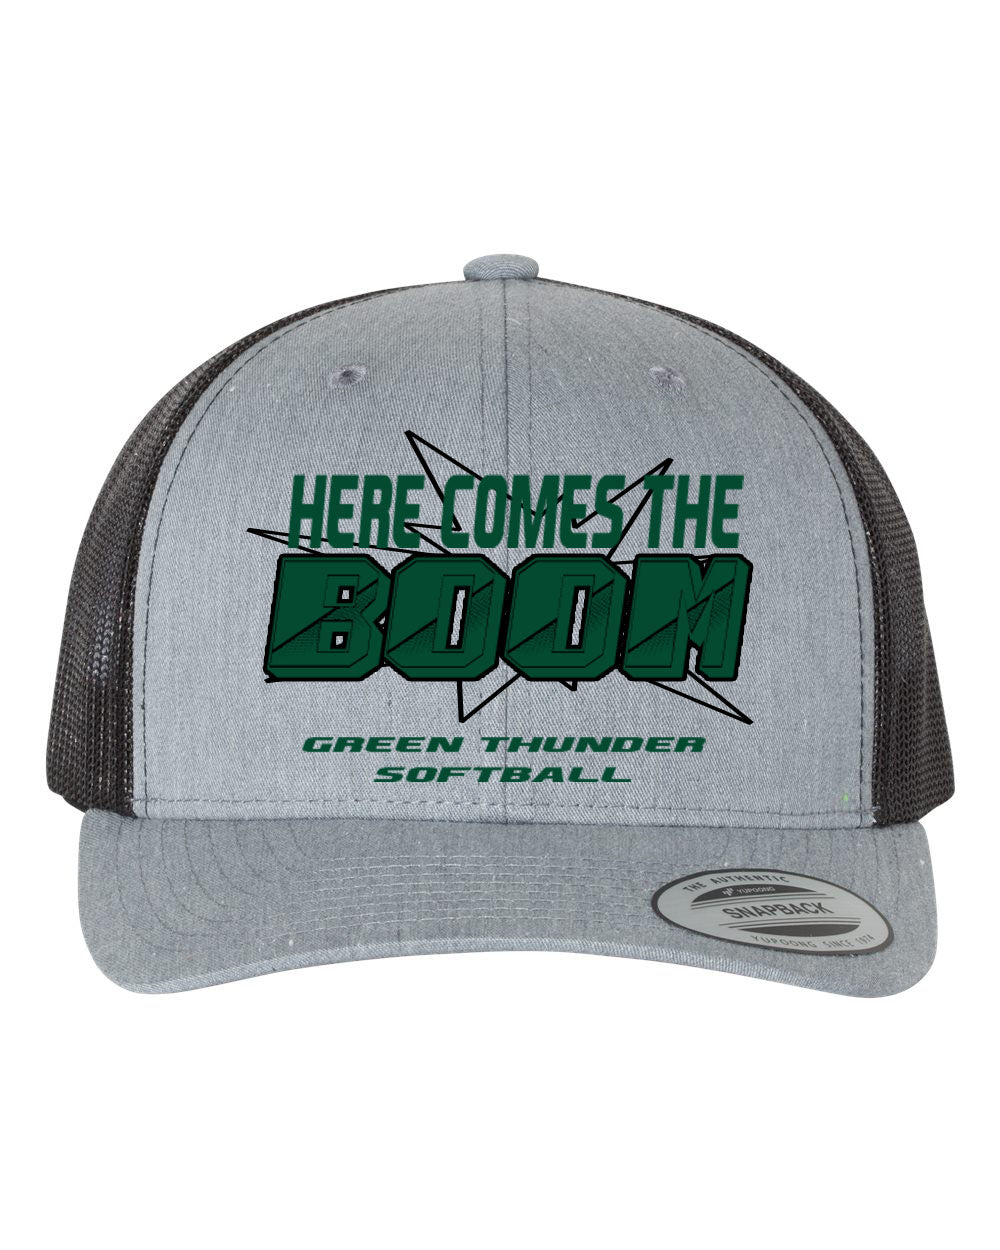 Green Thunder Design 3 Trucker Hat